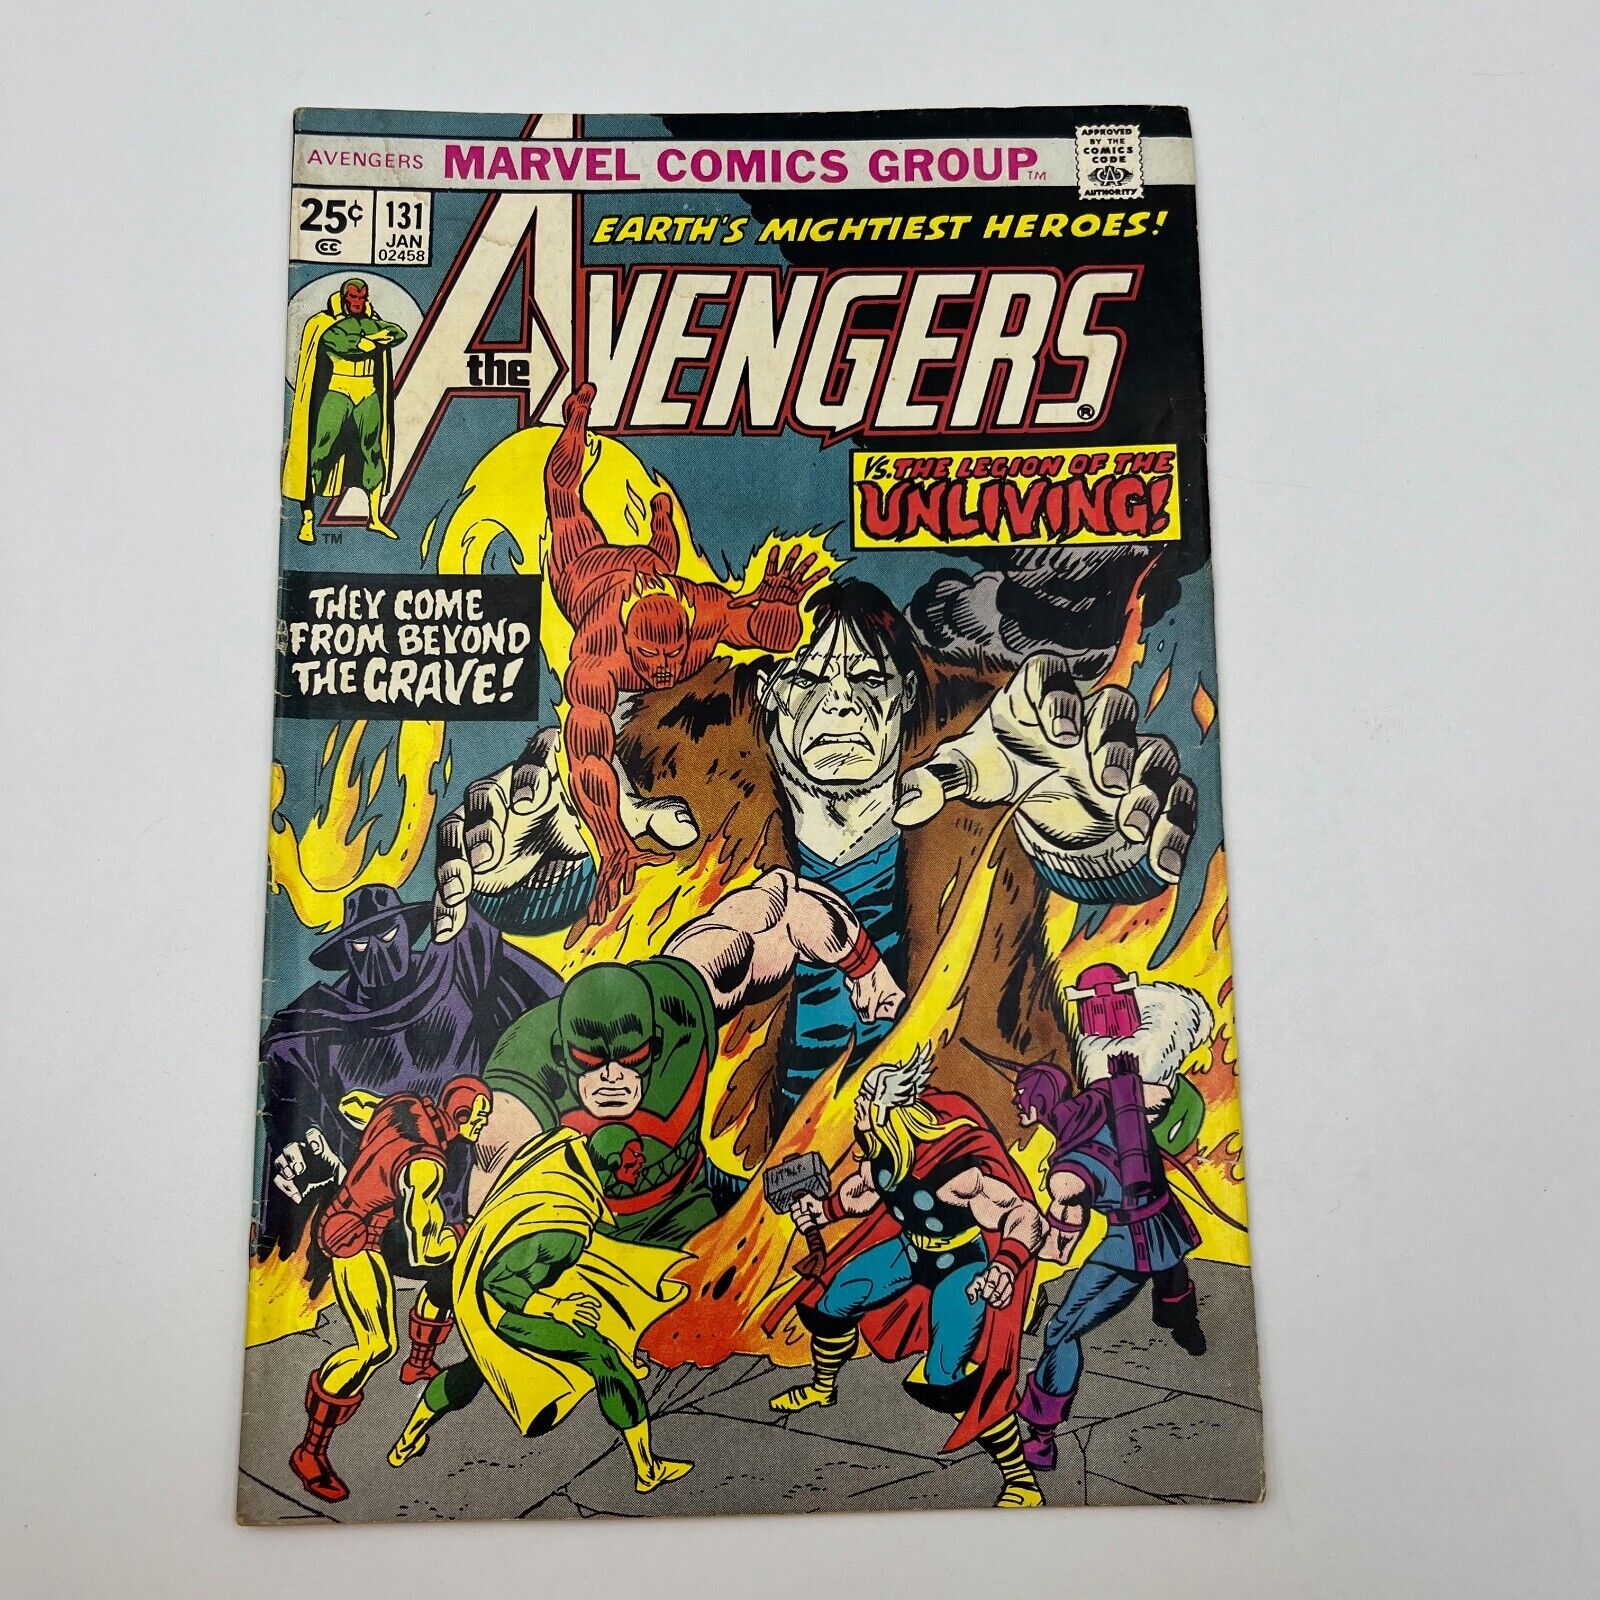 AVENGERS #131 (Marvel January 1975) ImmortusLegion of the Unliving Swordsman